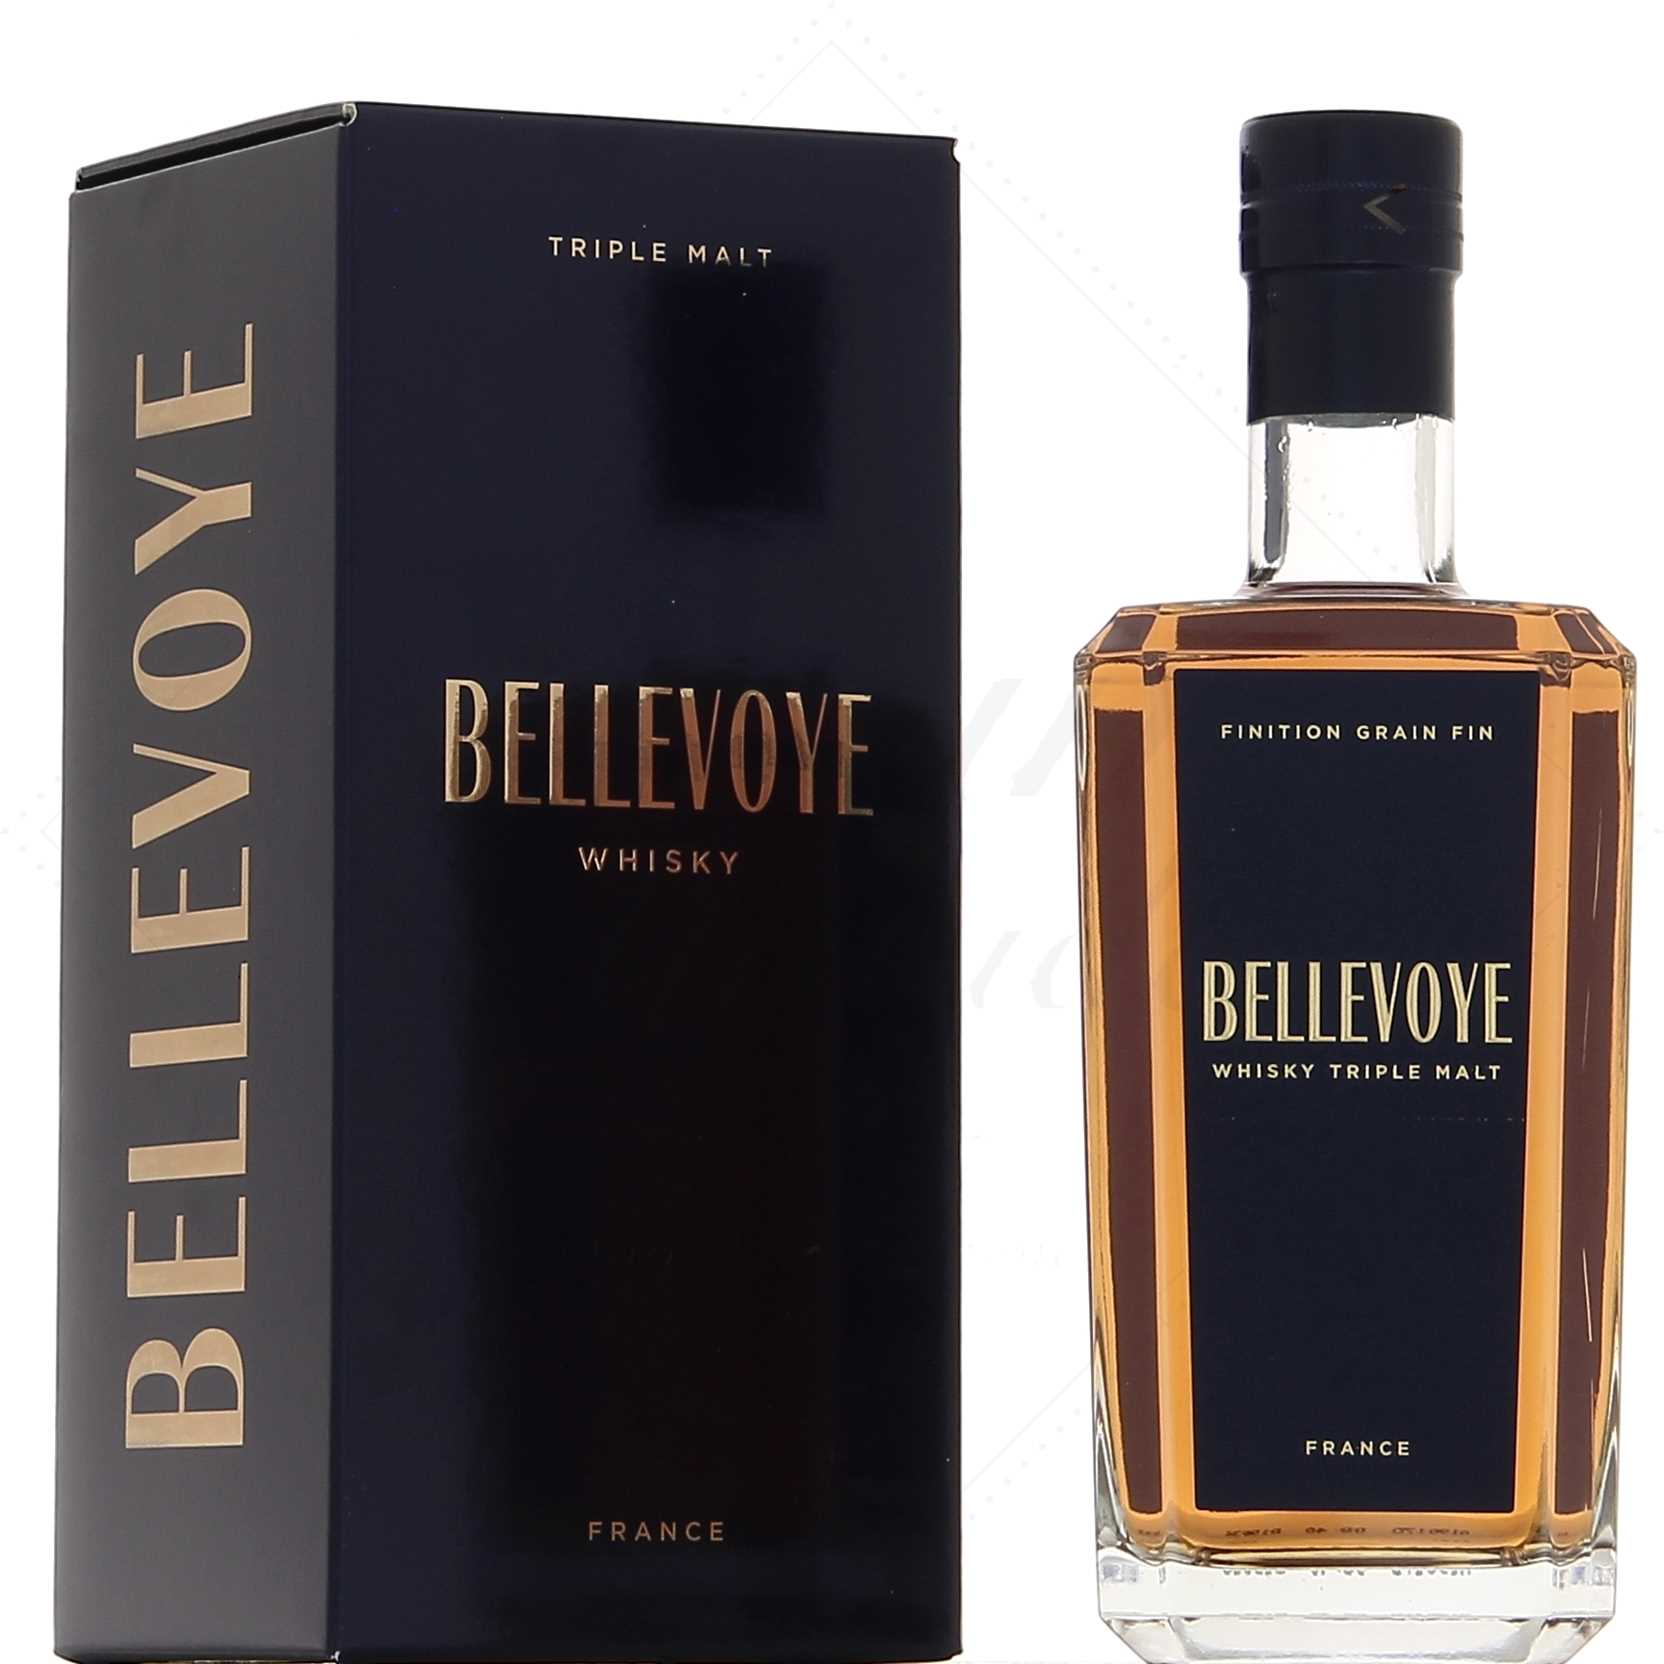 Découvrez le whisky Bellevoye Prune - Le mariage parfait entre le fruit et  le whisky